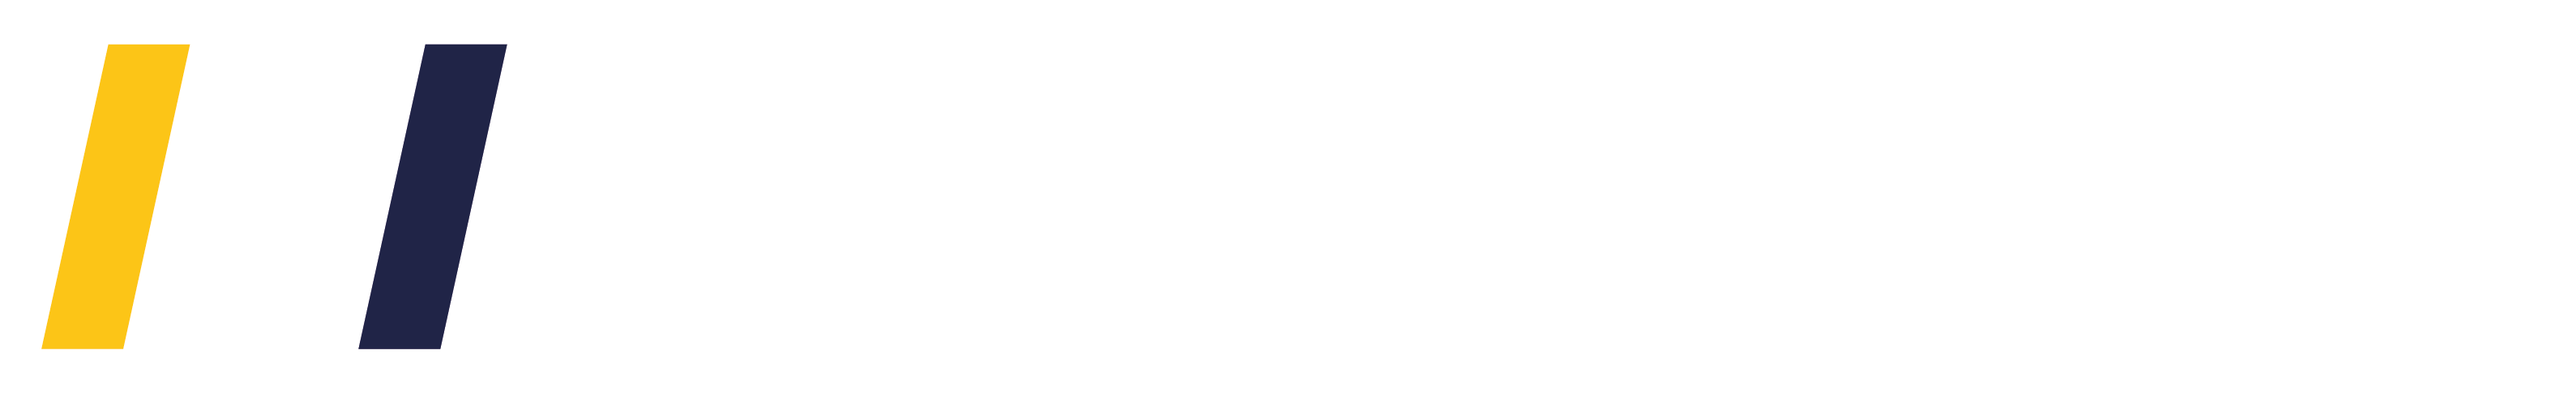 Logotipo Monbus